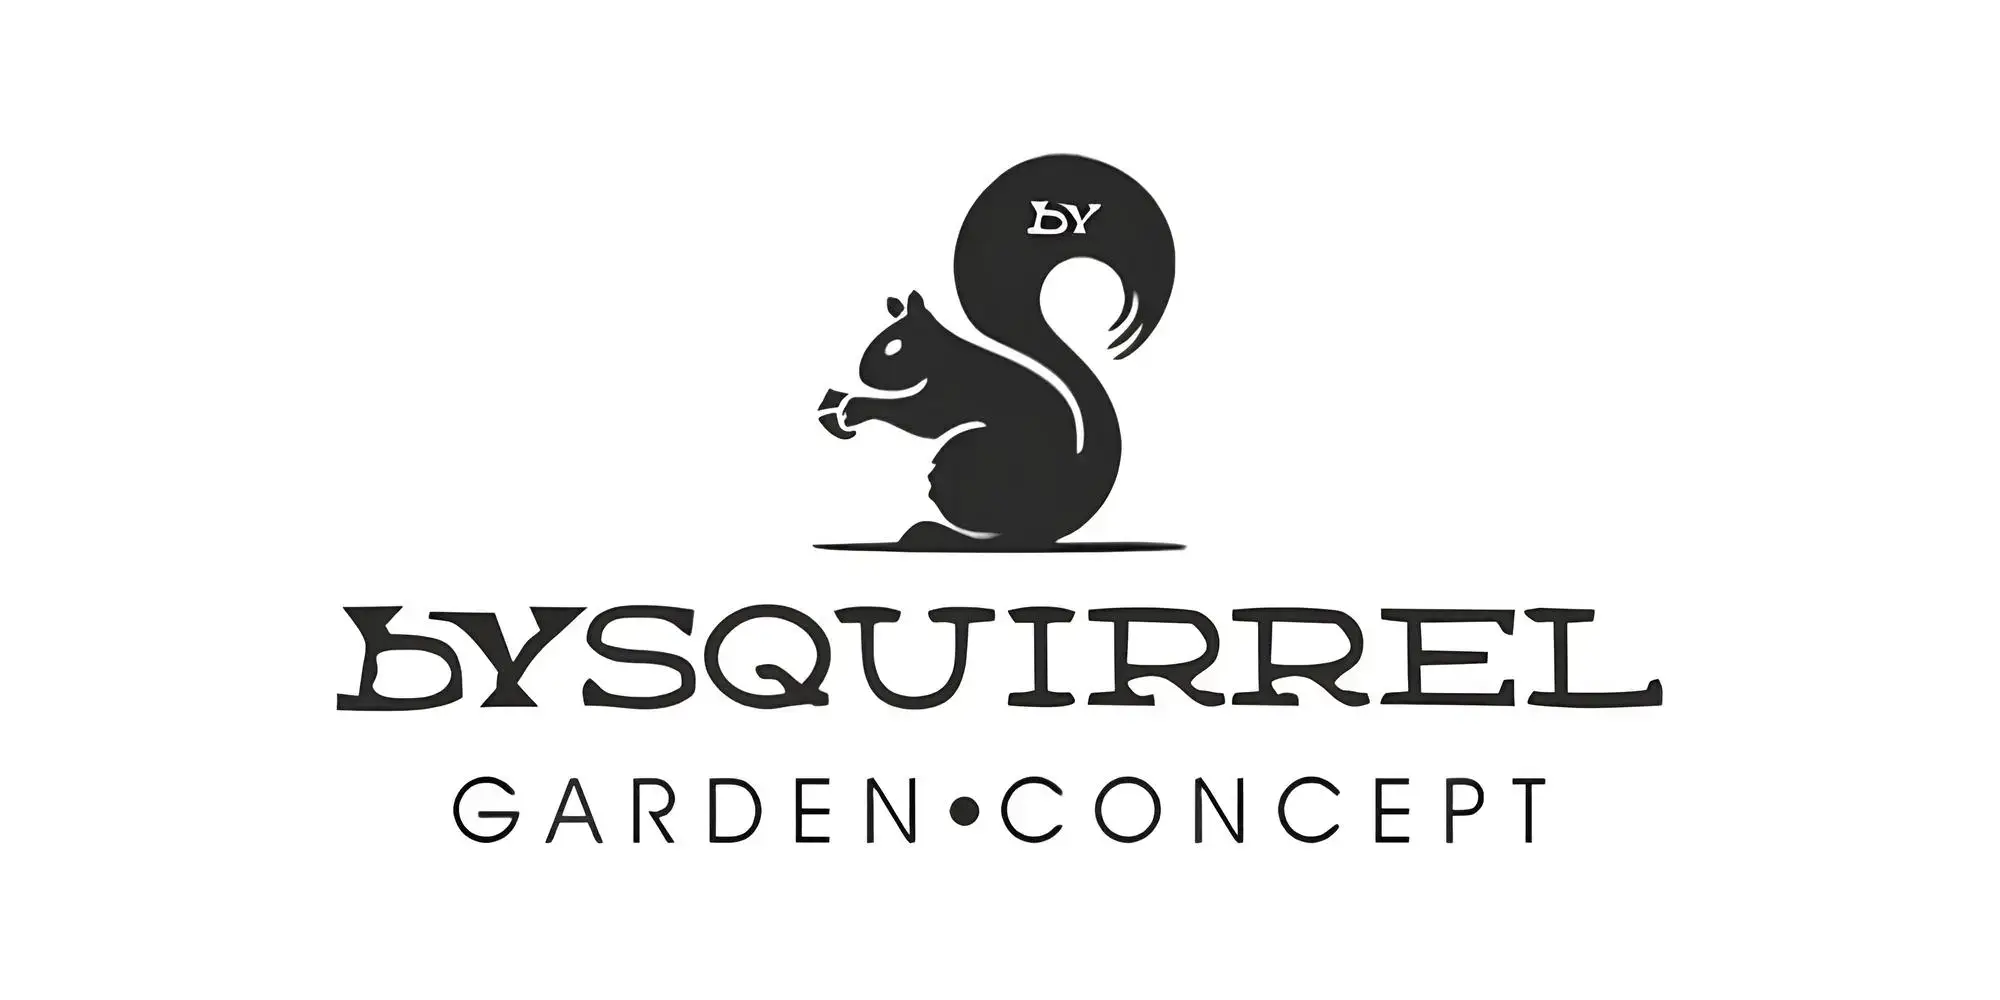 bysquirrel logosu siyah renk beyaz arka plan